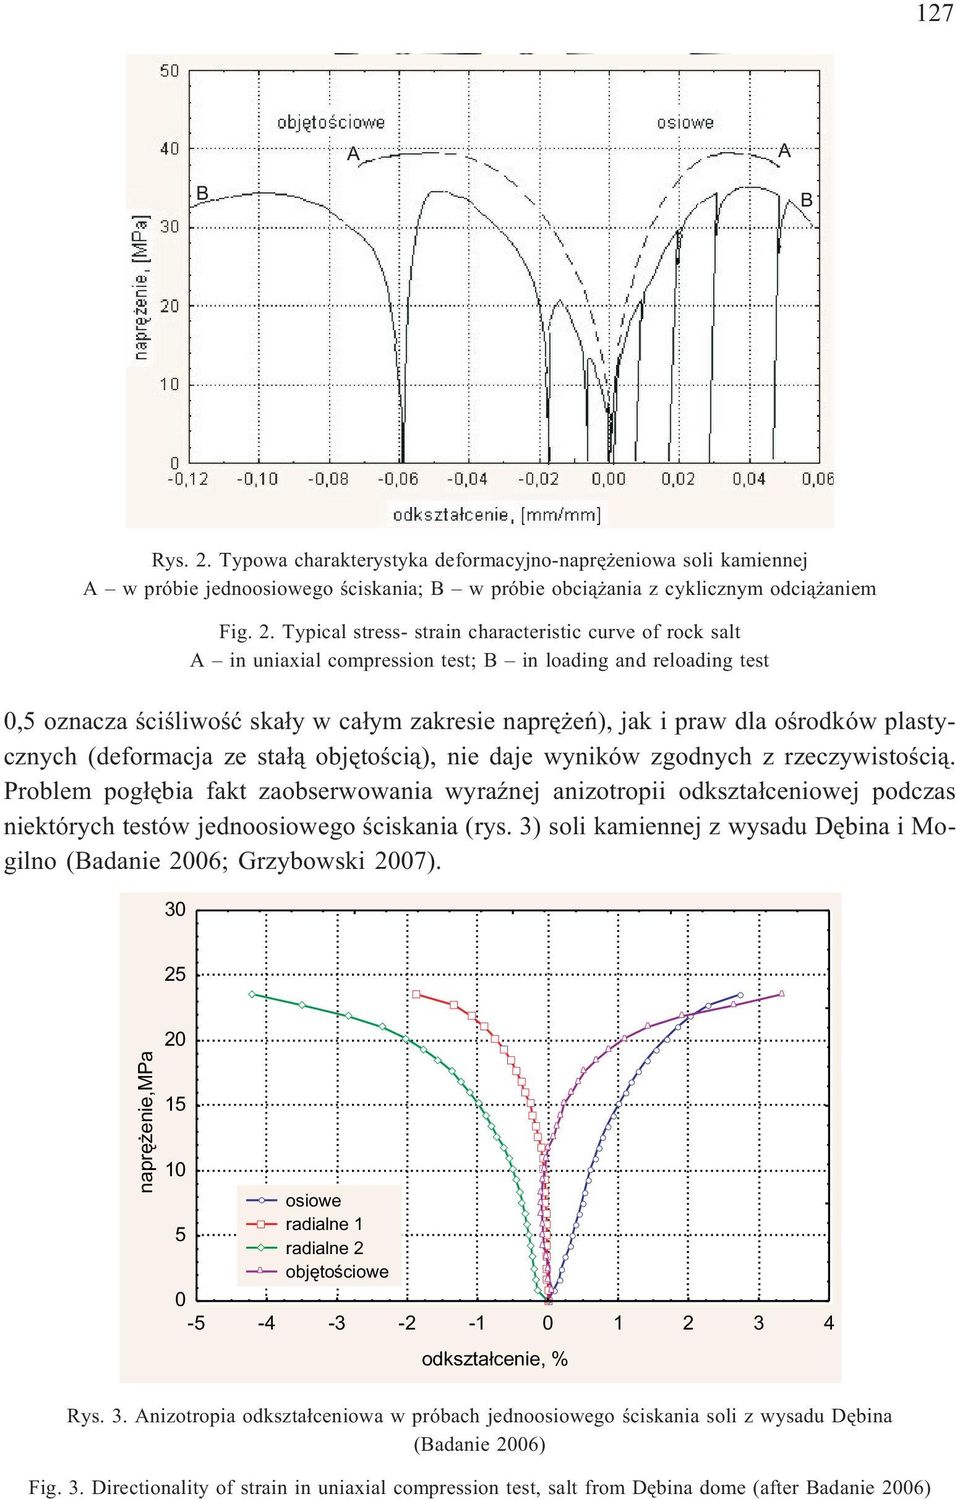 Typical stress- strain characteristic curve of rock salt A in uniaxial compression test; B in loading and reloading test 0,5 oznacza œciœliwoœæ ska³y w ca³ym zakresie naprê eñ), jak i praw dla